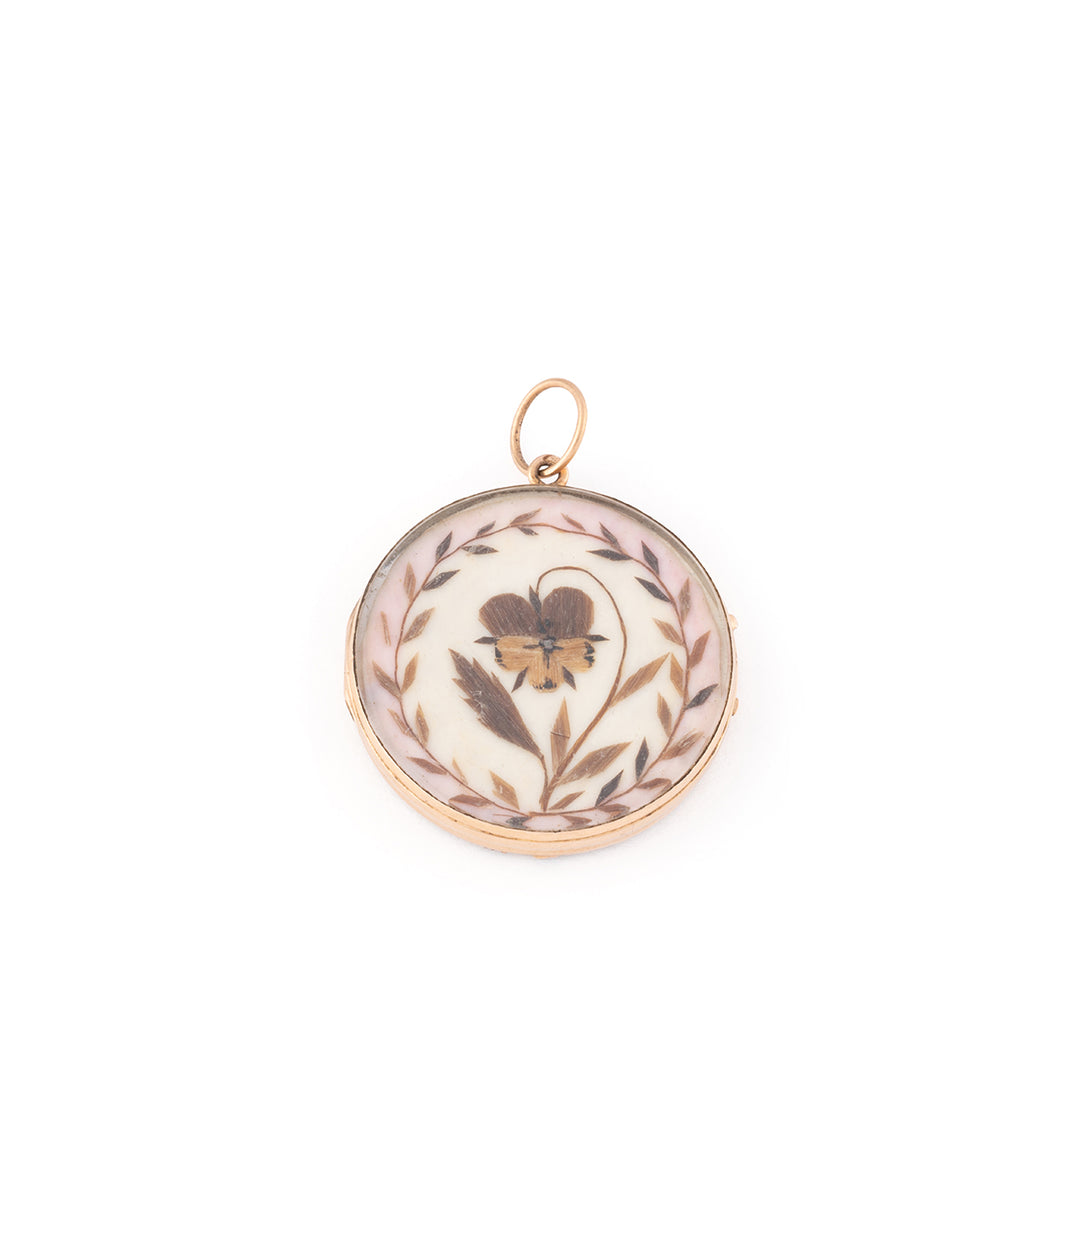 Antique hair pendant with initials "Luana" - Caillou Paris 